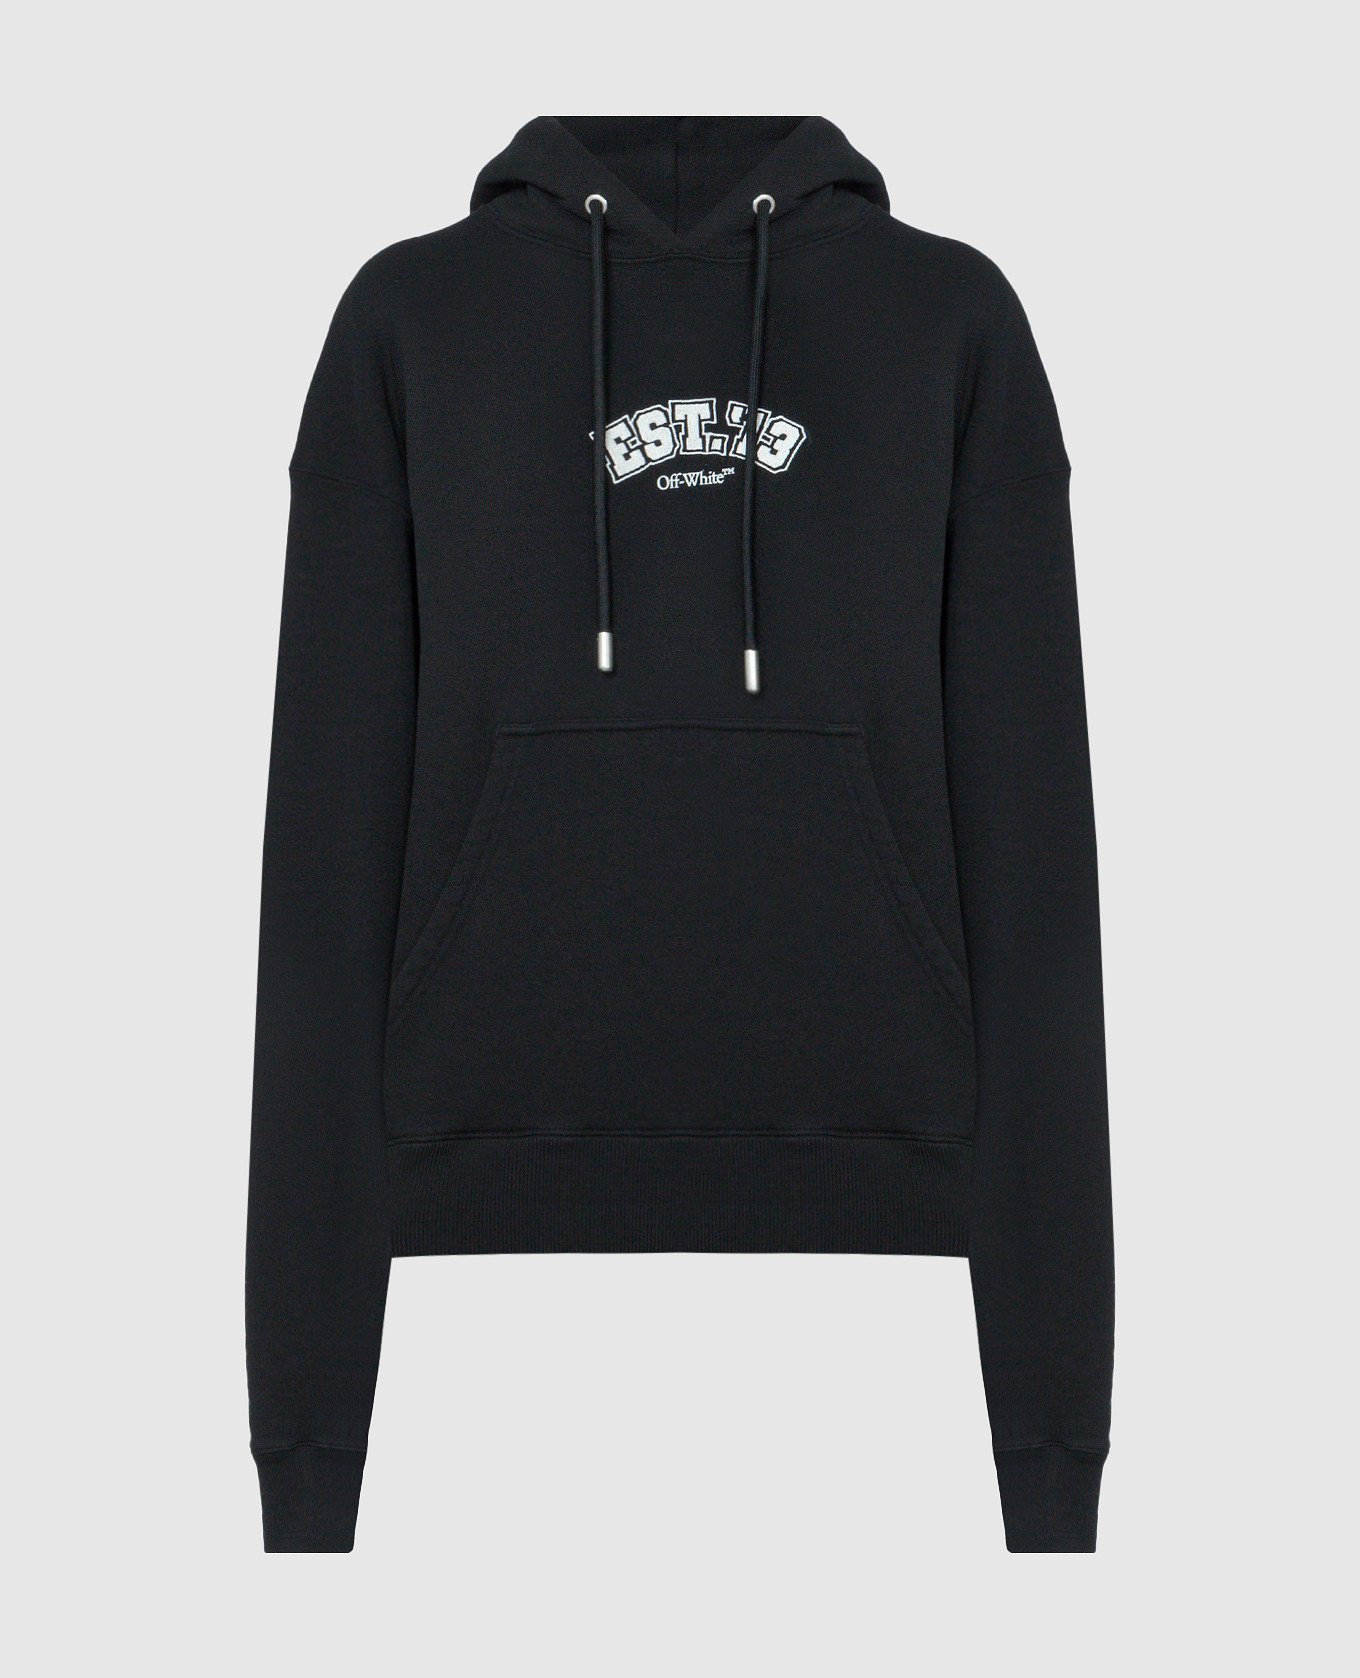 Black printed Logic hoodie